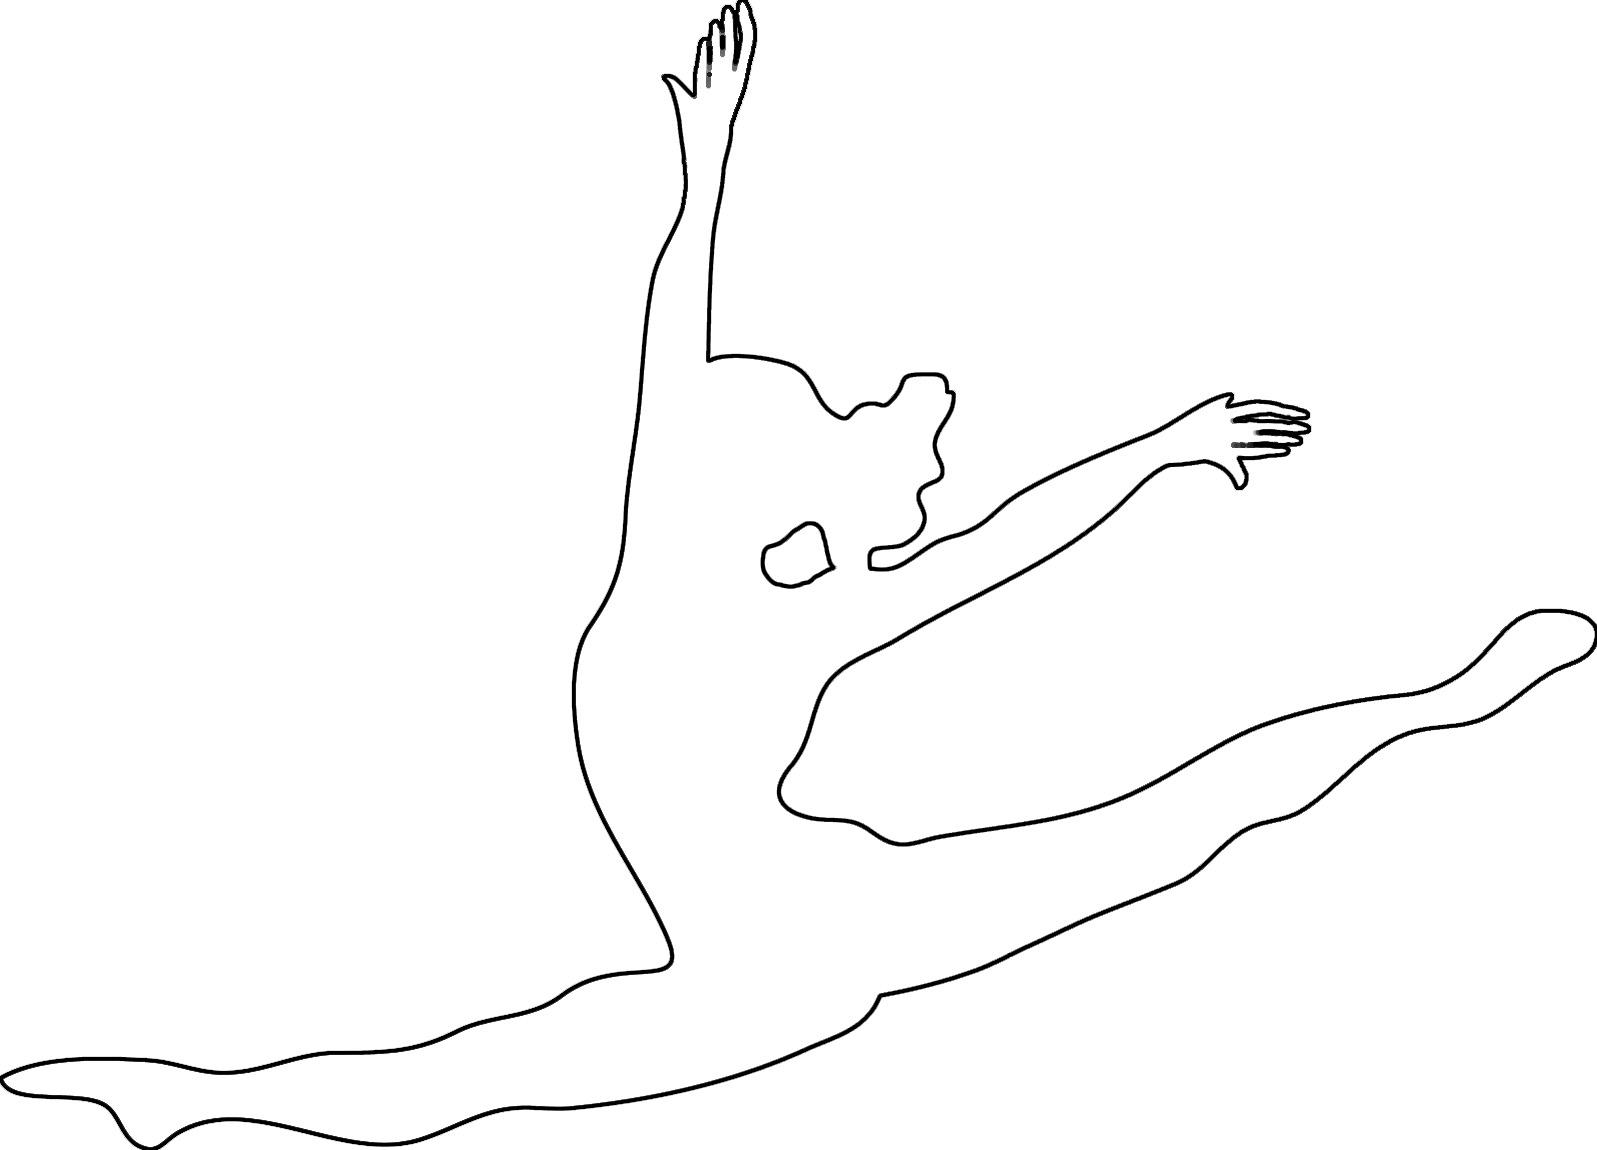 Розмальовки шаблони балерин балерина в польоті контур для вирізання з паперу